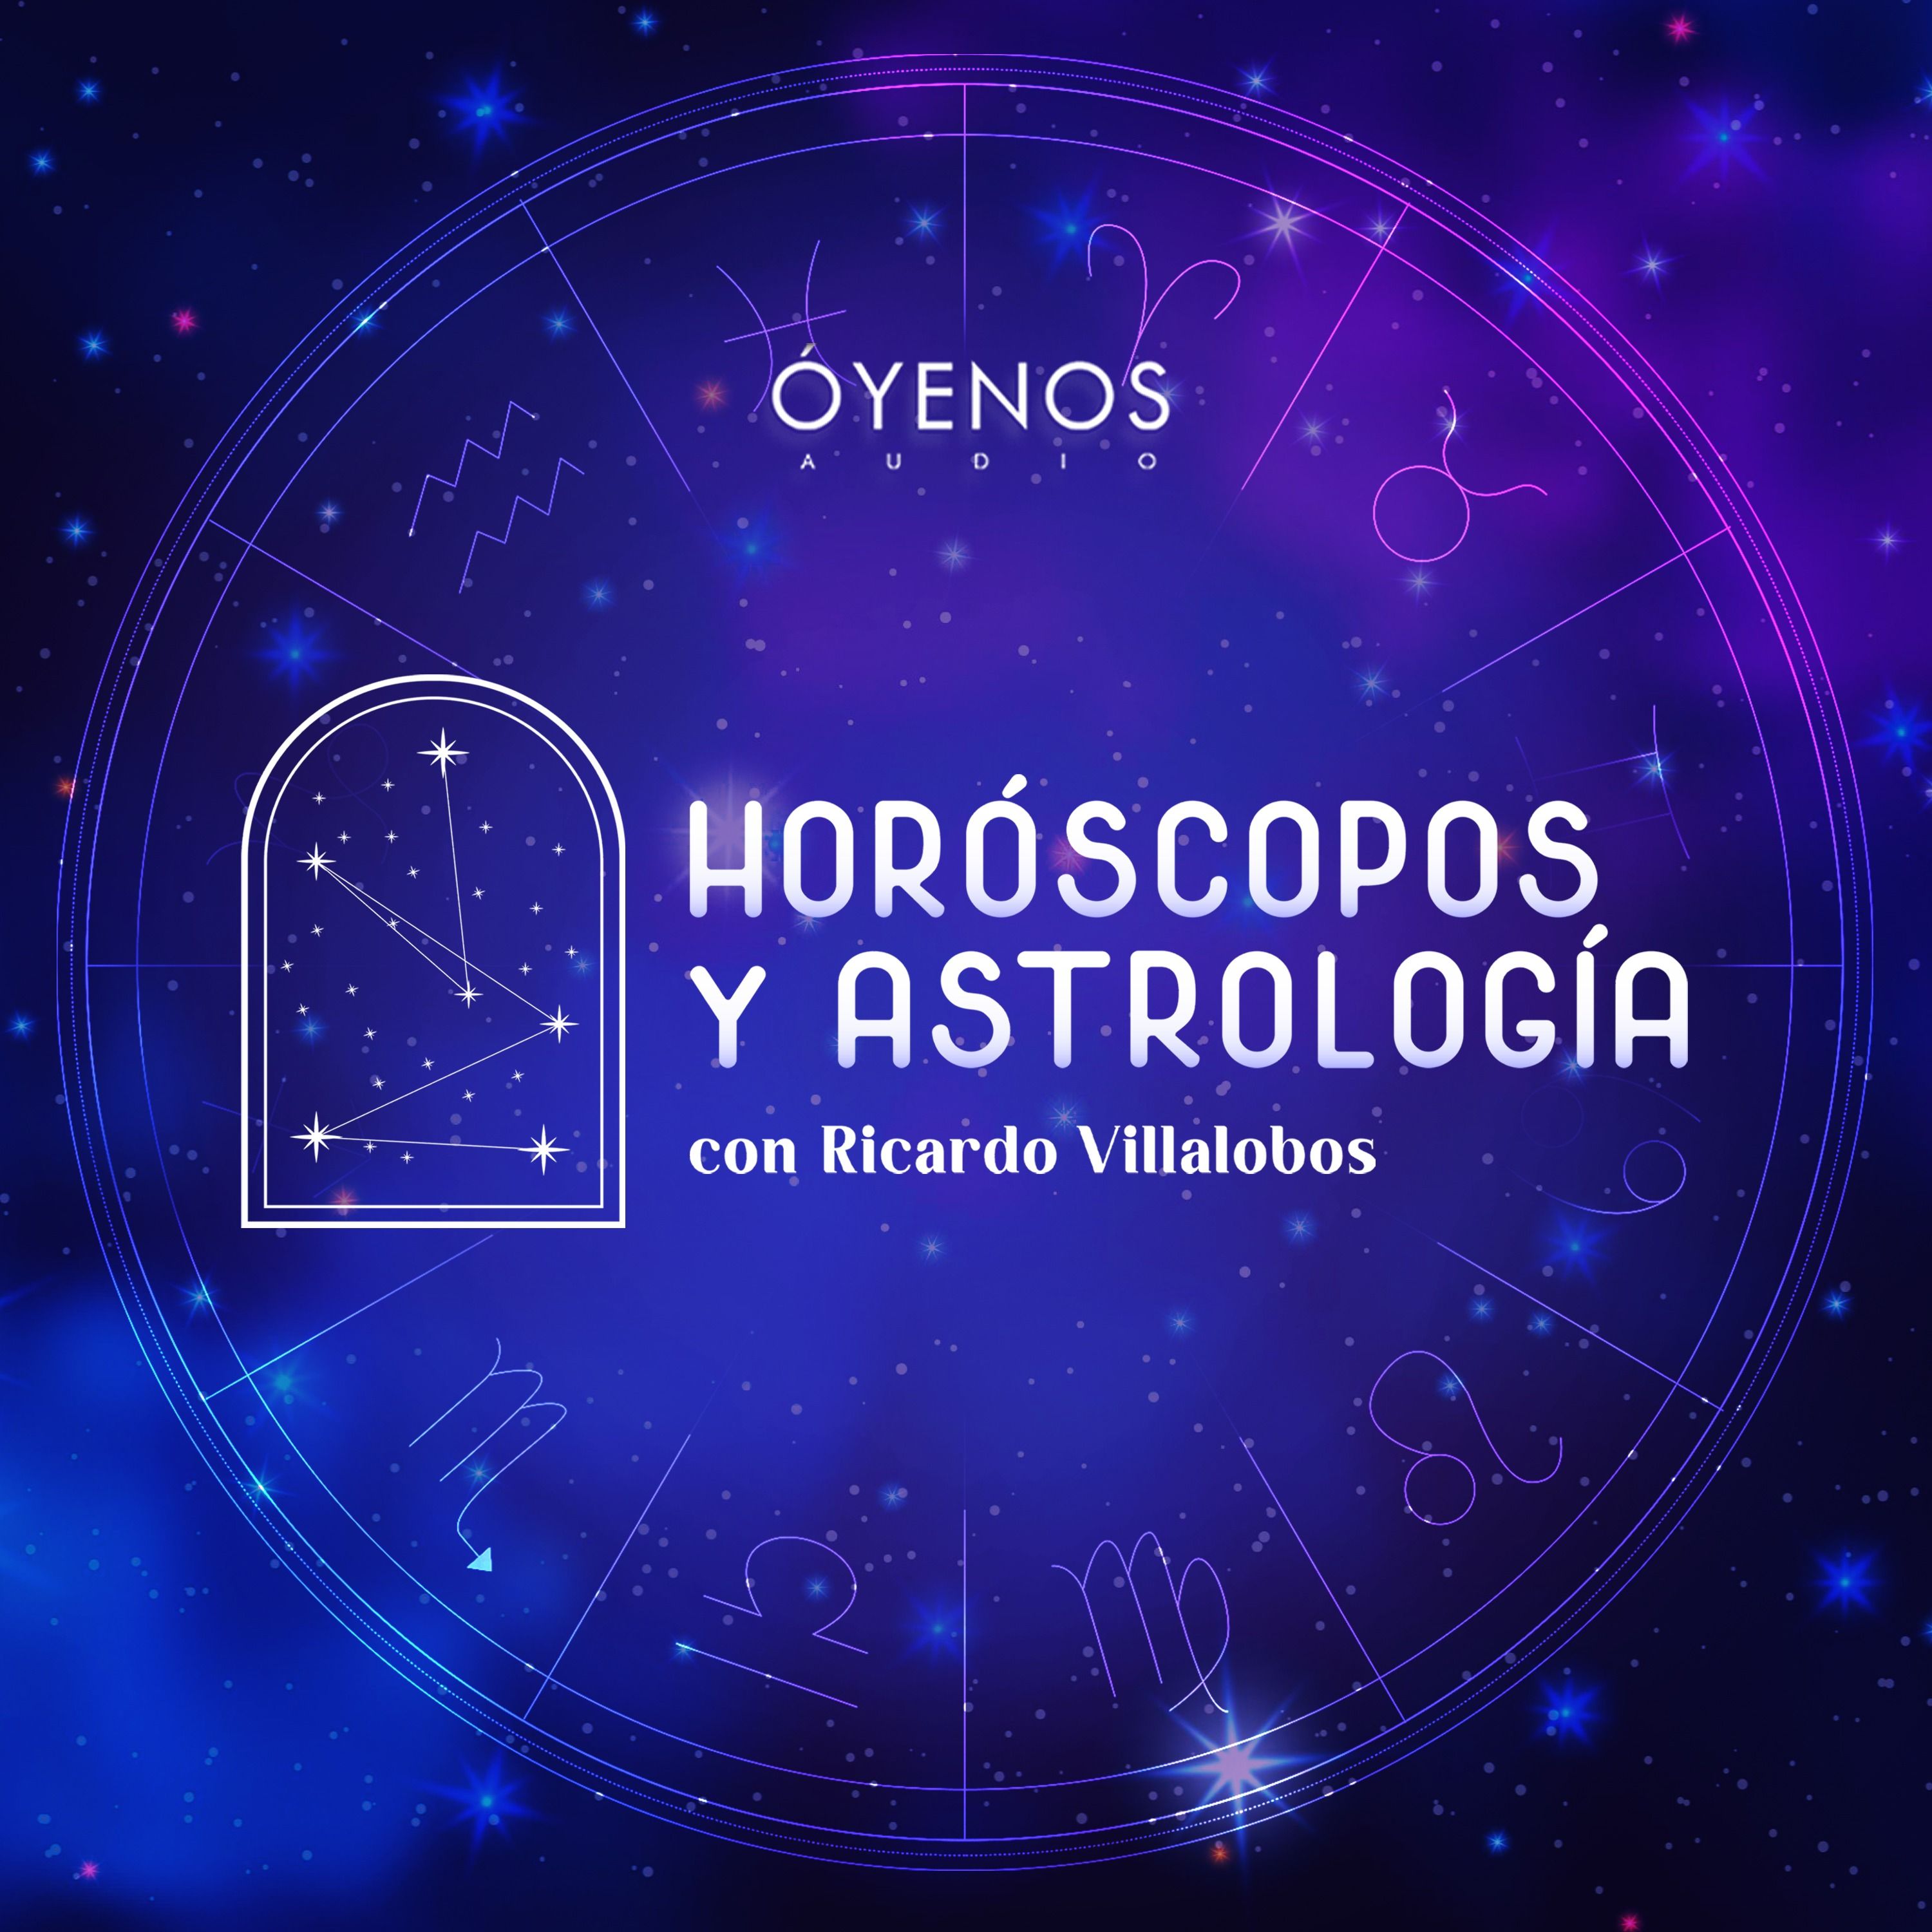 Horóscopos y Astrología con Ricardo Villalobos